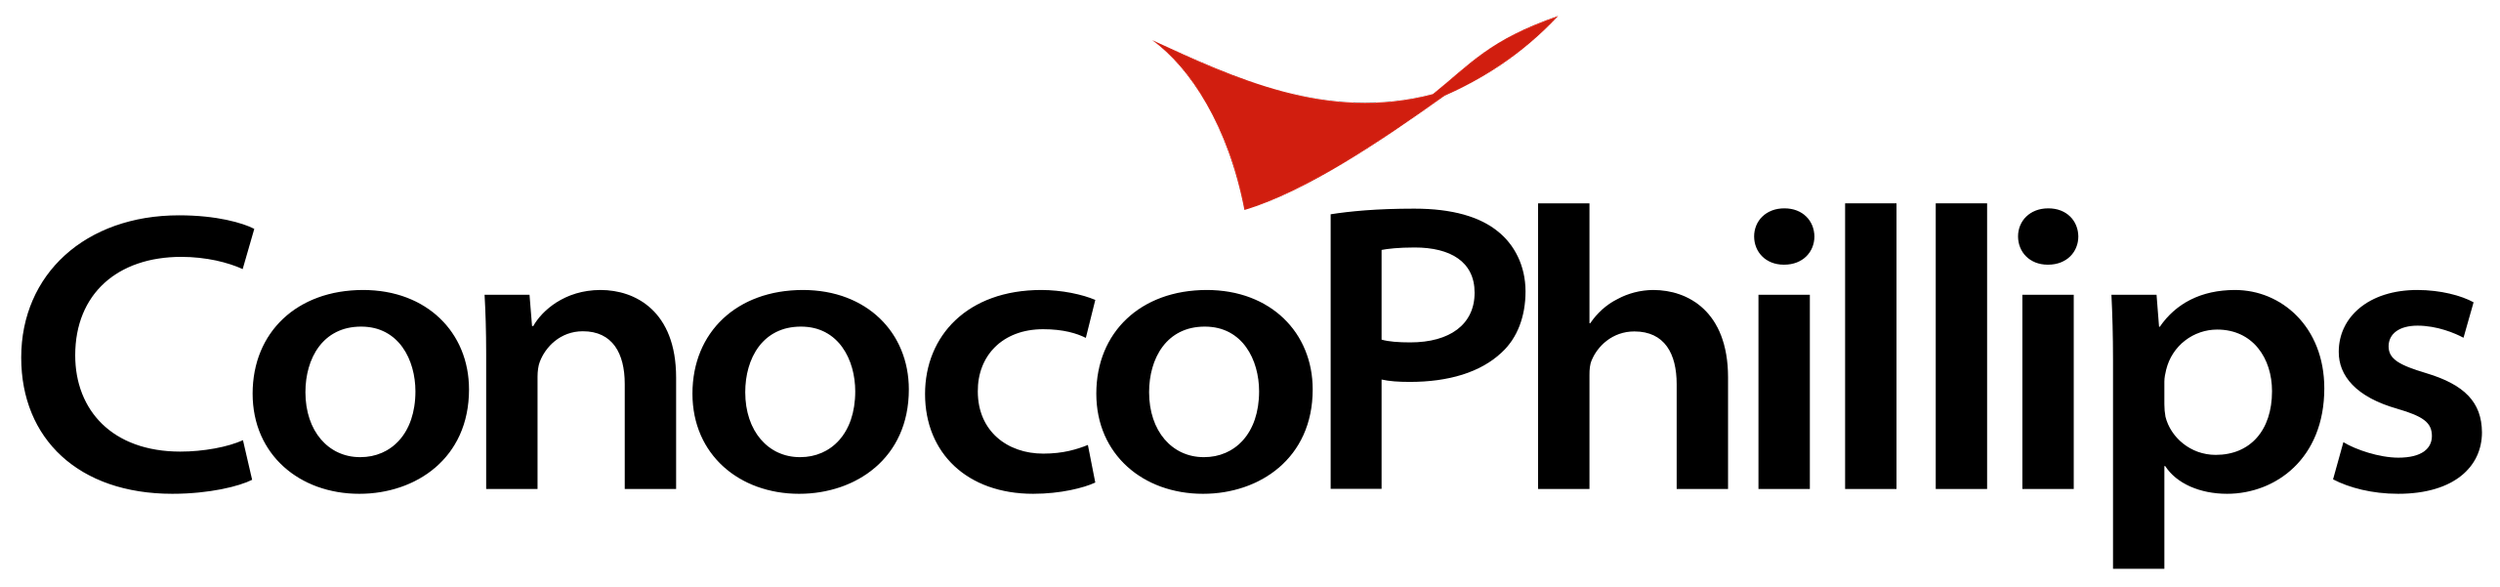 ConocoPhillips_Logo.svg.png